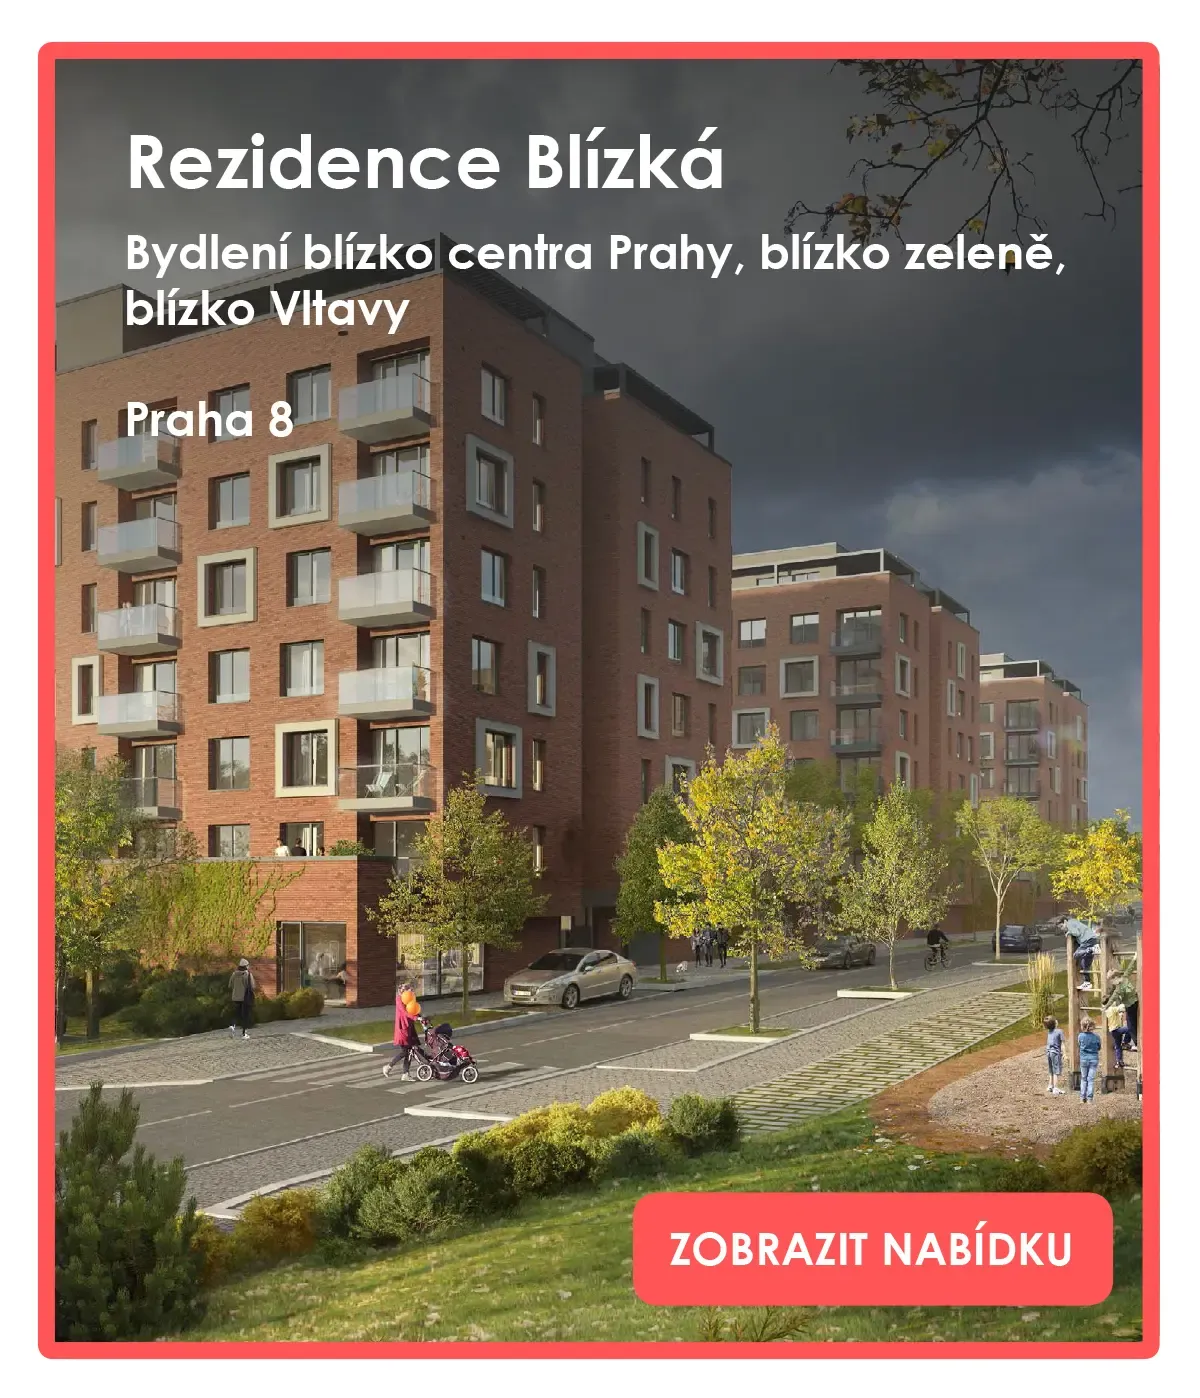 Residence Topolka